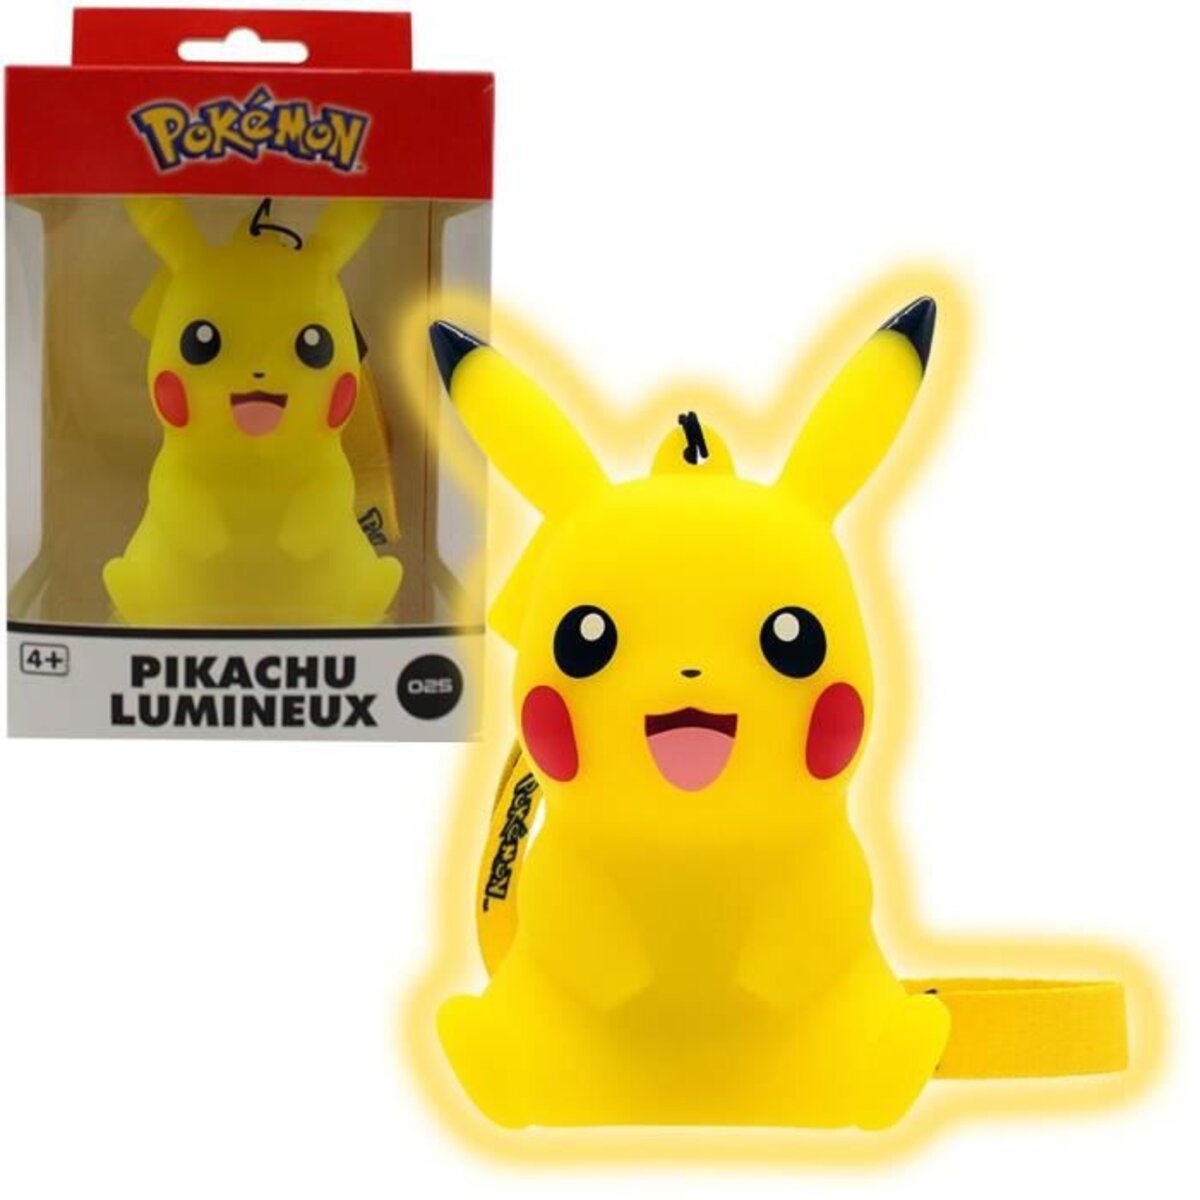 Pokémon - Figurine Pikachu lumineuse - veuilleuse Pokémon - La Poste